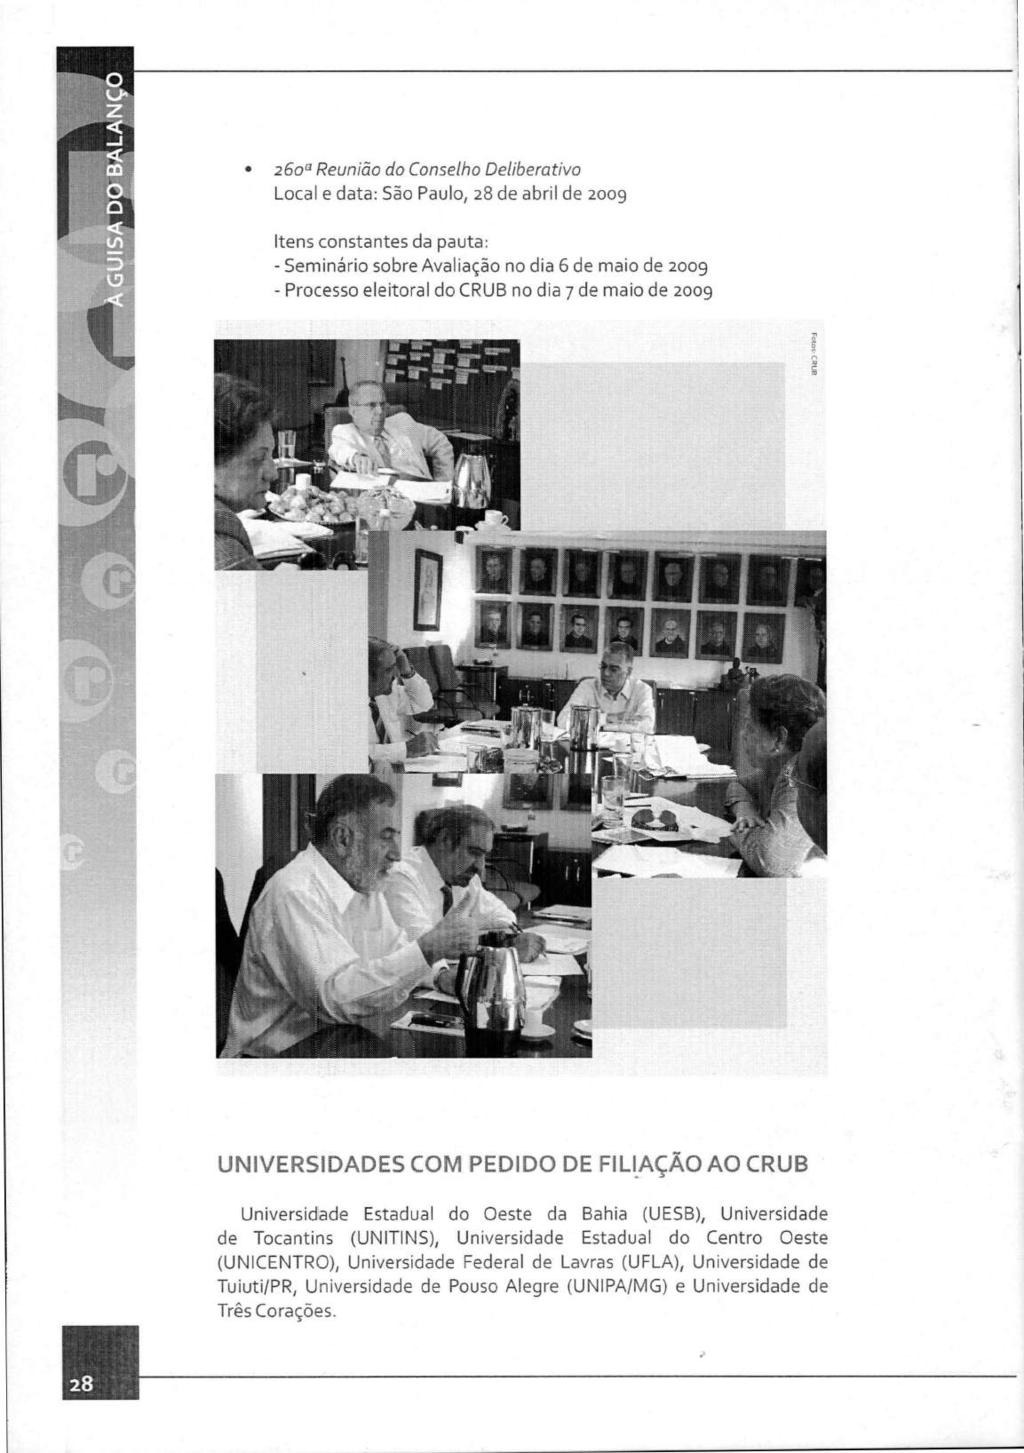 26ou Reunião do Conselho Deliberativo Local e data: São Paulo, 28 de abril de 2009 Itens constantes da pauta: - Seminário sobre Avaliação no dia 6 de maio de 2009 - Processo eleitoral do CRUB no dia